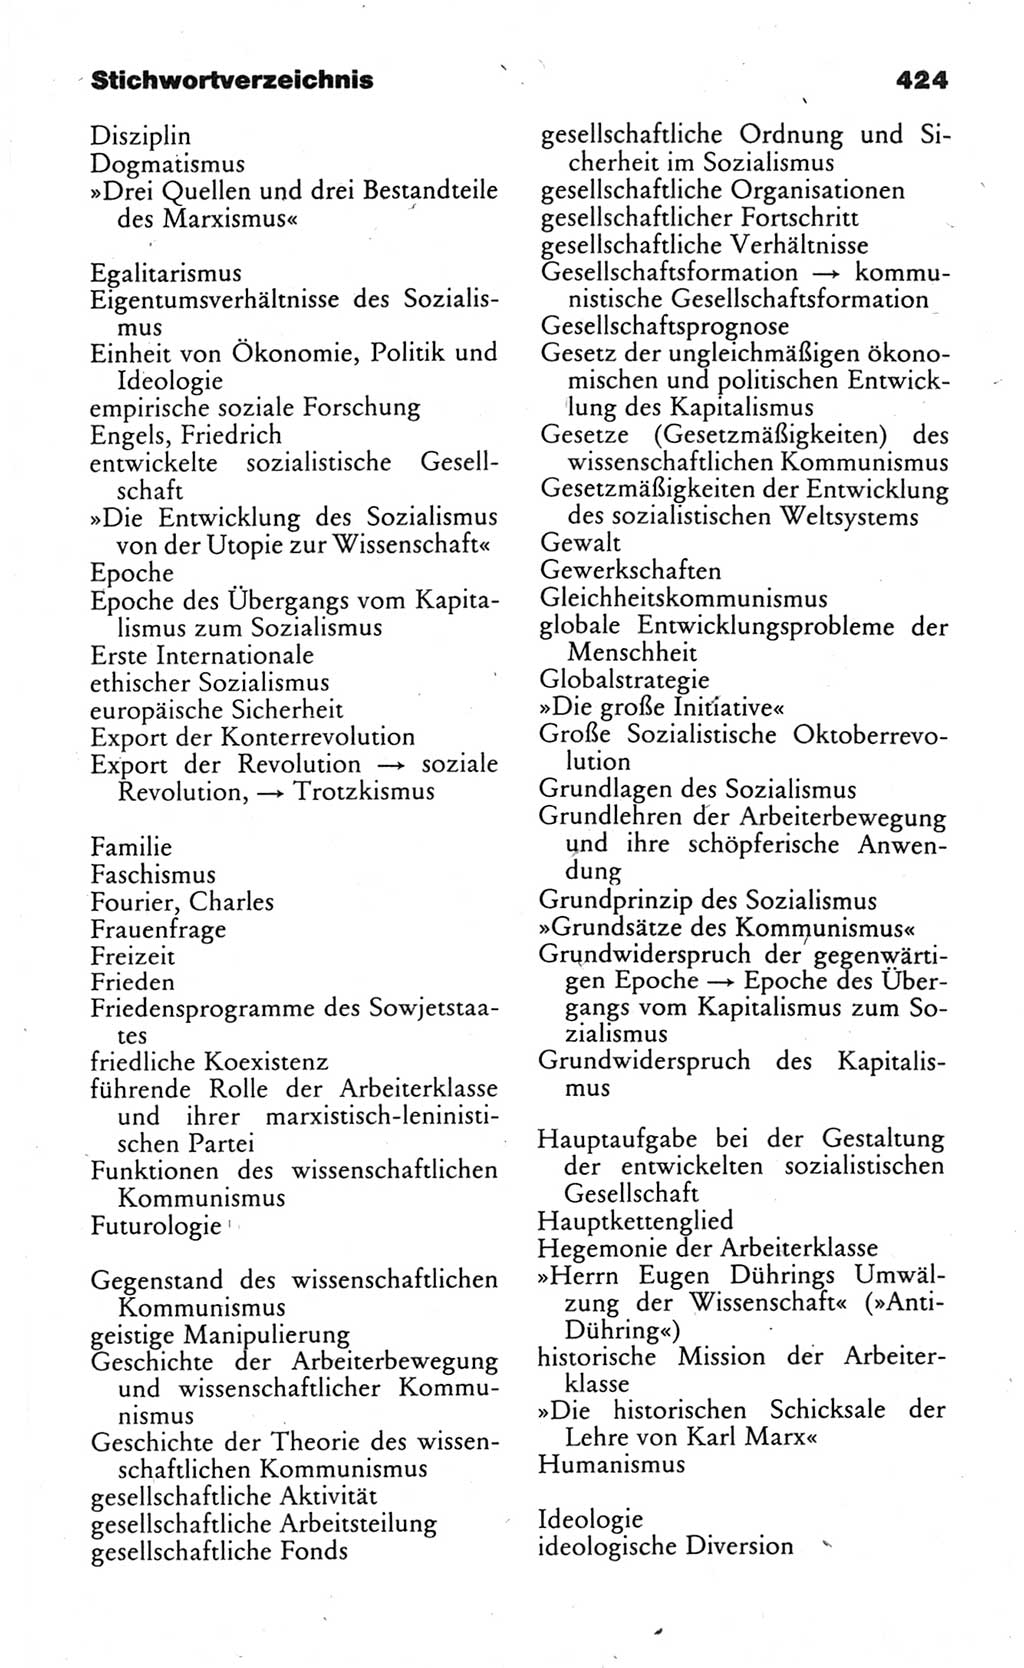 Wörterbuch des wissenschaftlichen Kommunismus [Deutsche Demokratische Republik (DDR)] 1984, Seite 424 (Wb. wiss. Komm. DDR 1984, S. 424)